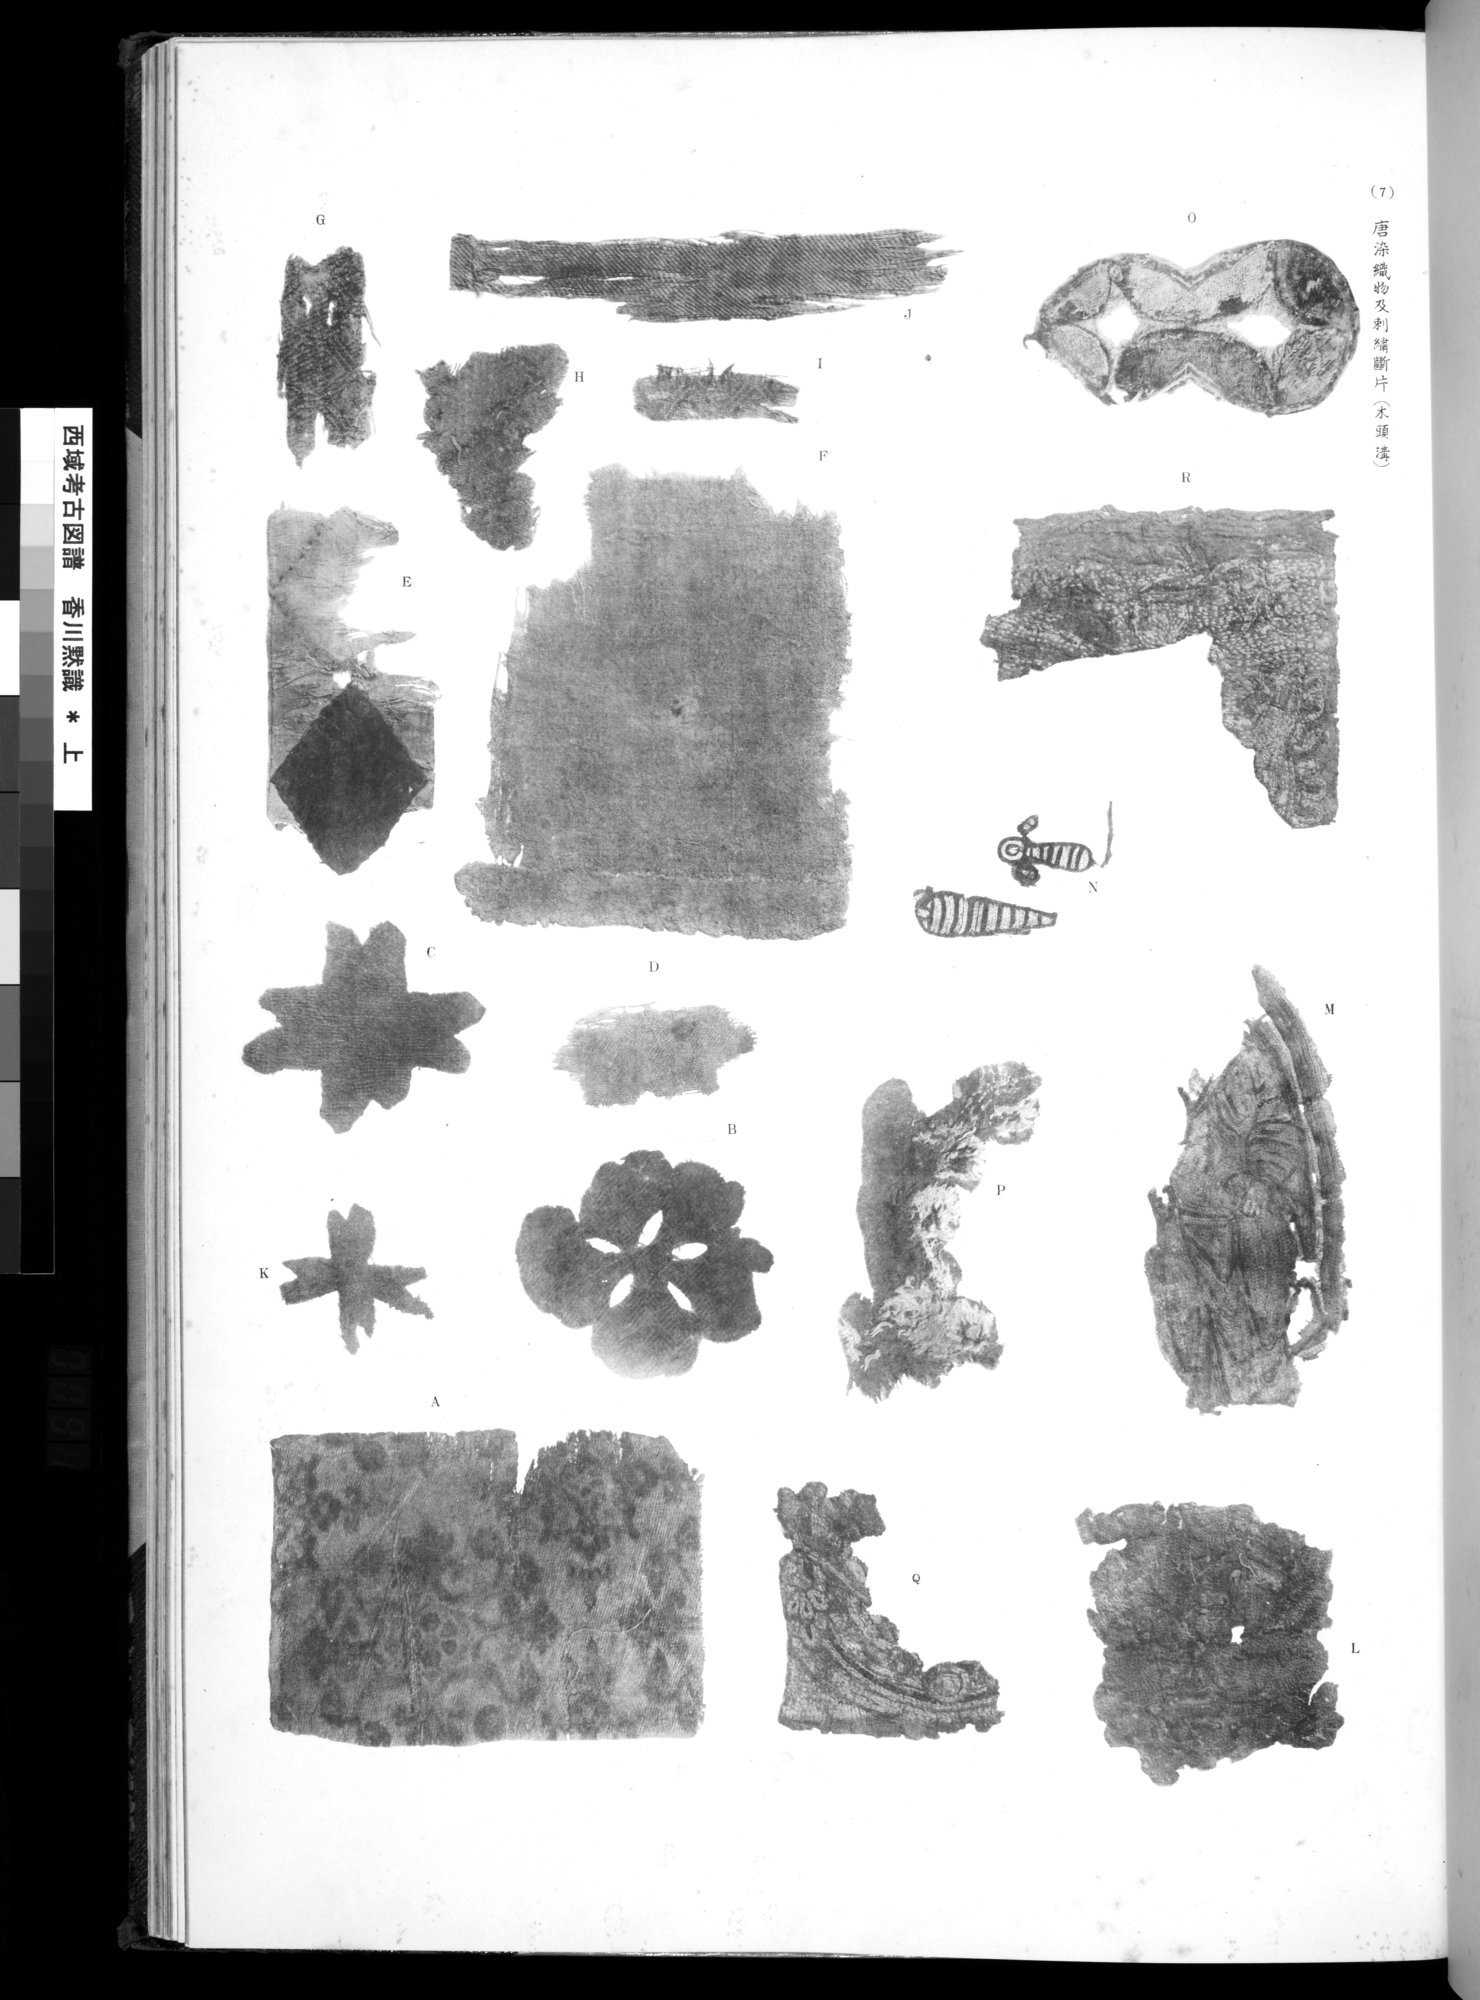 西域考古図譜 : vol.1 / 183 ページ（白黒高解像度画像）